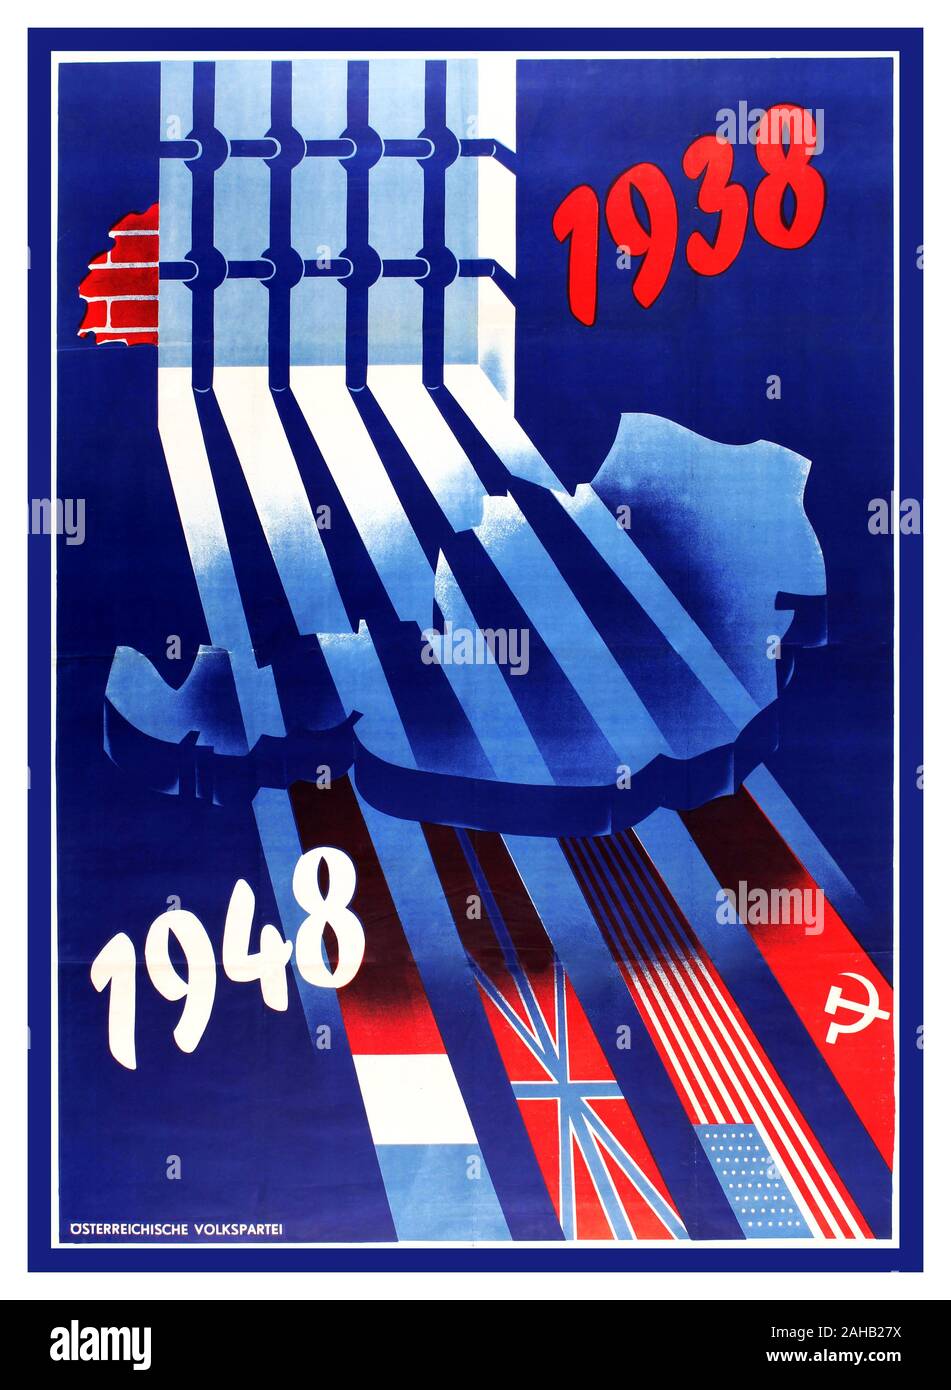 WW2 Original vintage Anschluss affiche de propagande publiés par le Parti du Peuple (Ostereichische Volkspartei OVP ; fondé en 1945) doté d'un design dynamique et coloré sur un fond bleu foncé d'une carte de l'Allemagne Nazi emprisonné derrière les barreaux avec les dates 1938 en rouge et 1948 en blanc et les ombres formant les drapeaux des pays alliés pour symboliser l'annexion de l'Autriche par l'Allemagne nazie dans le Troisième Reich en 1938 (Anschluss) jusqu'à la fin de la Seconde Guerre mondiale en 1945, suivie par l'occupation alliée ((France, UK, USA, Union soviétique). 1948, le pays d'impression : l'Autriche, Banque D'Images